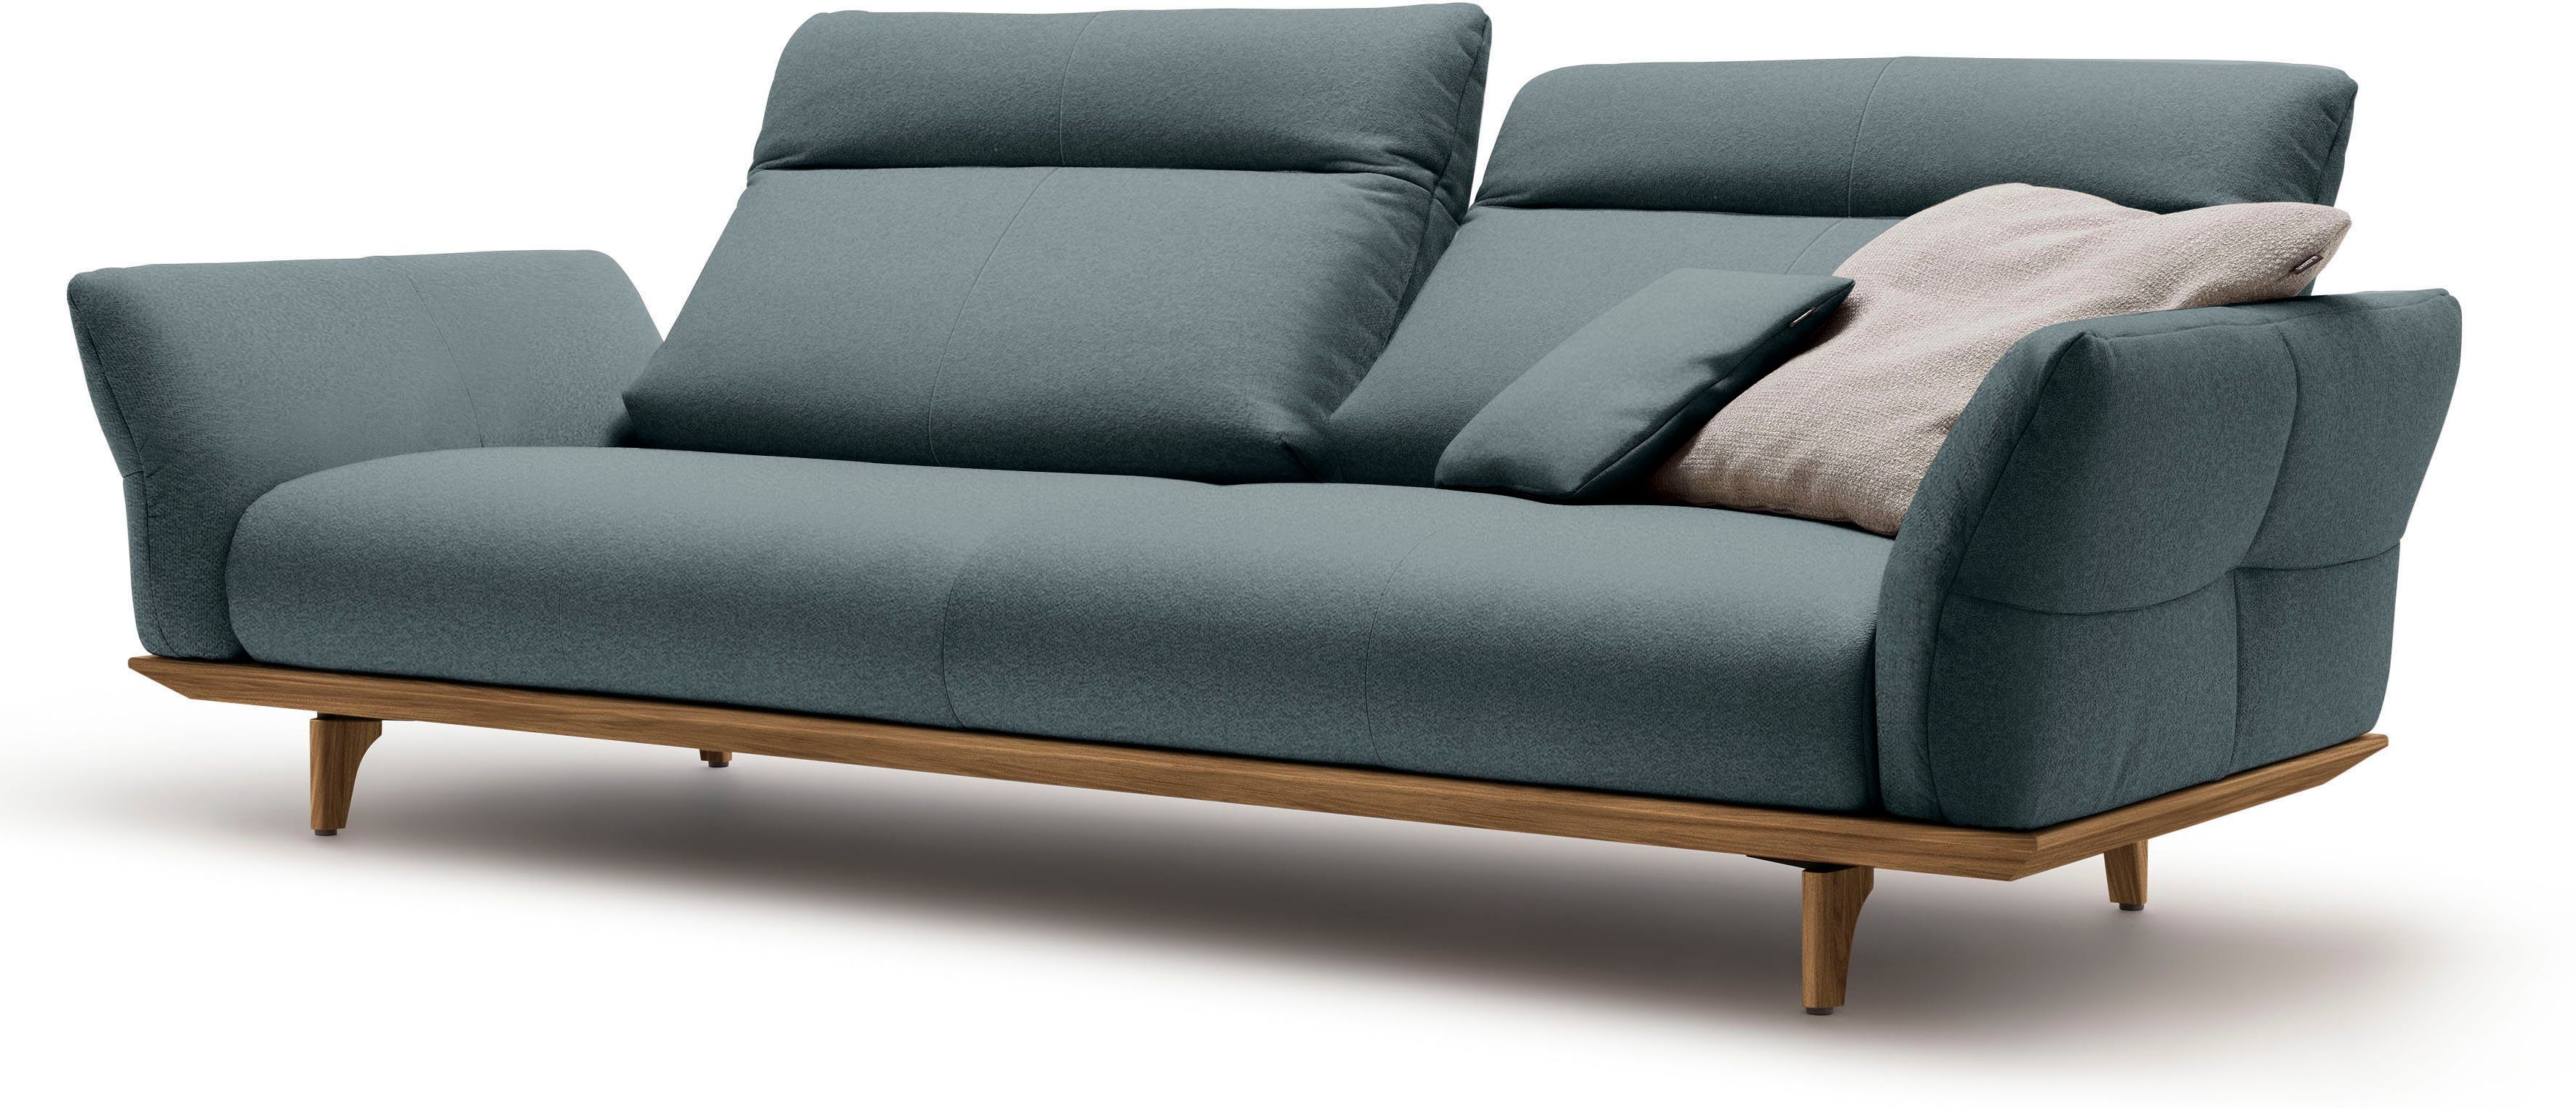 hülsta sofa Breite Füße in cm Sockel 228 und Nussbaum, 3,5-Sitzer hs.460